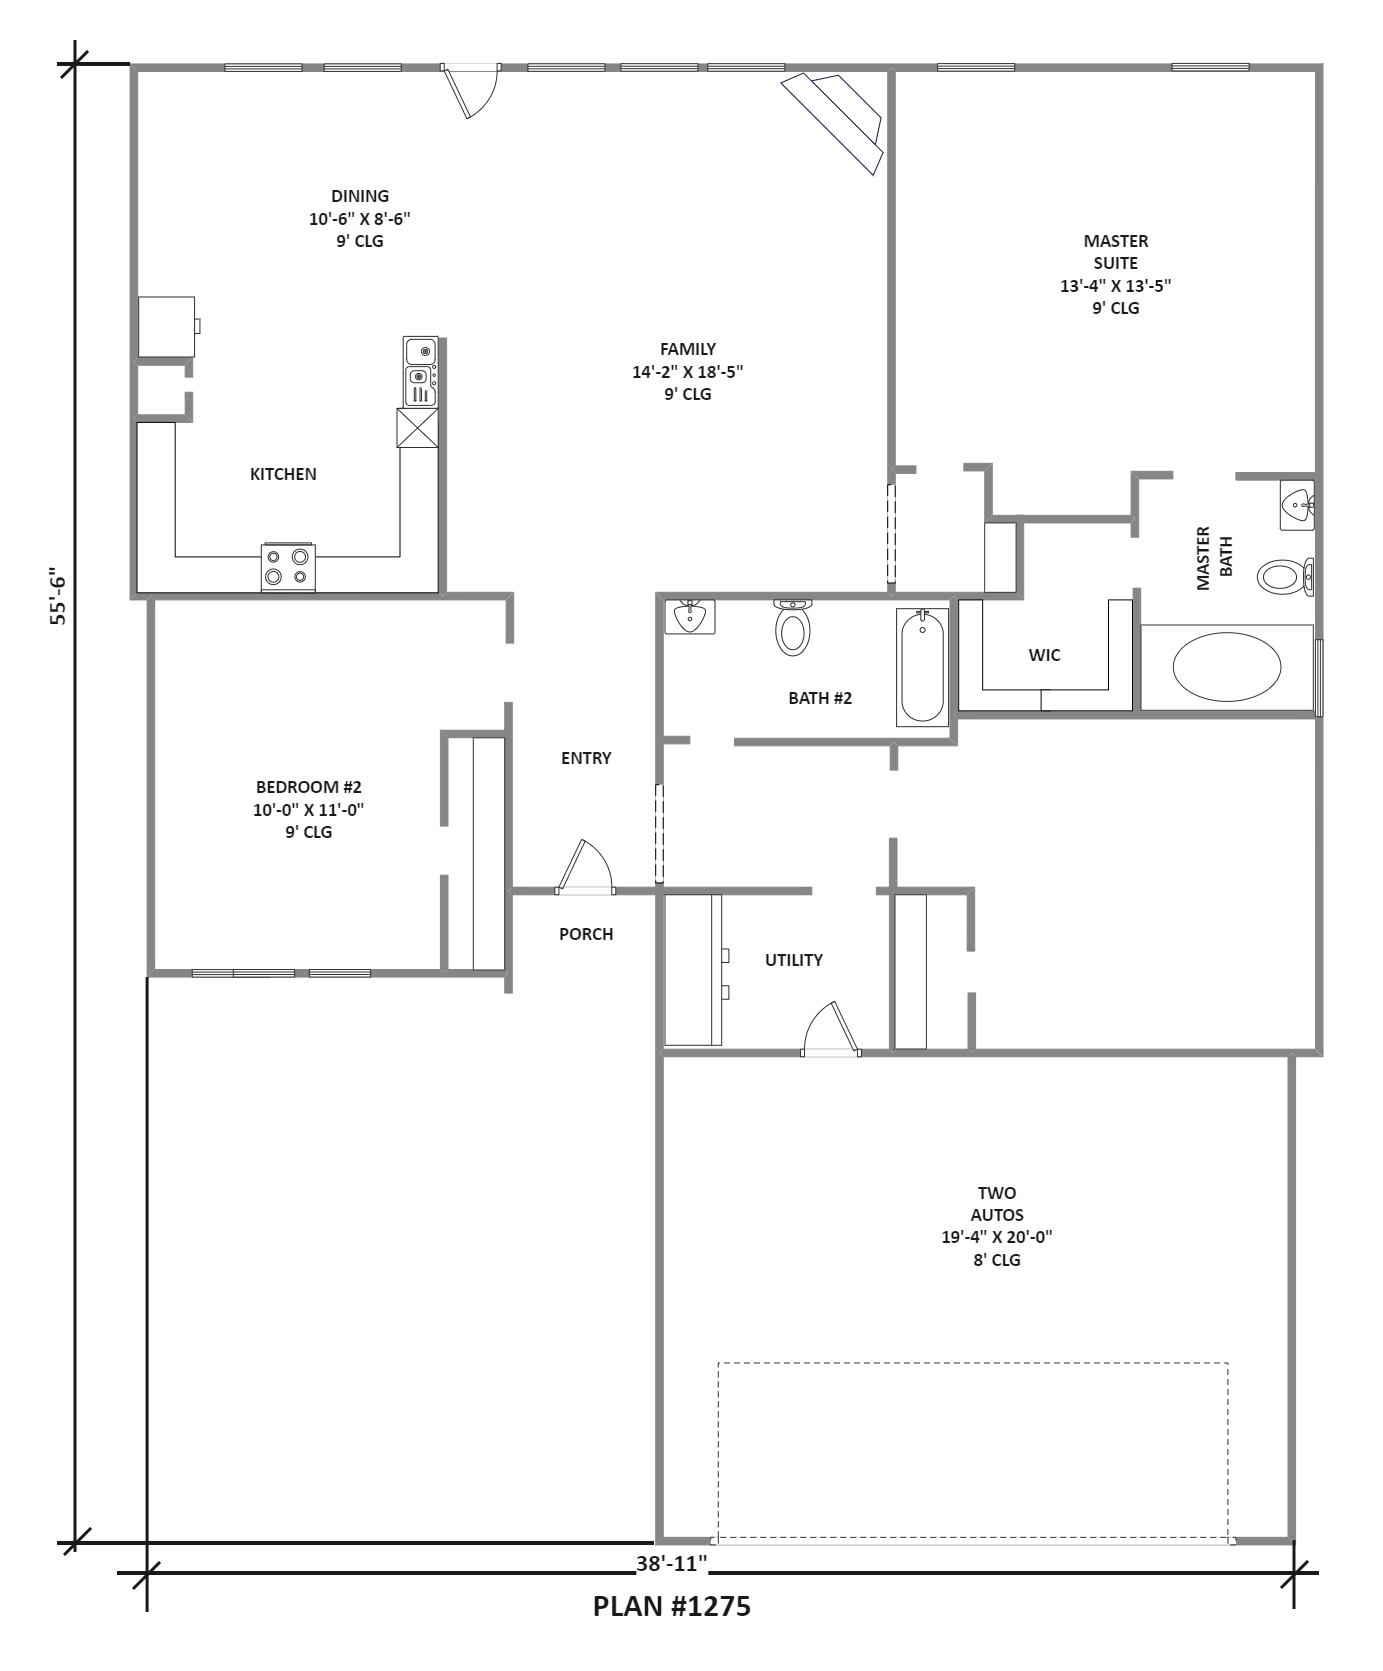 House Plan Drawn